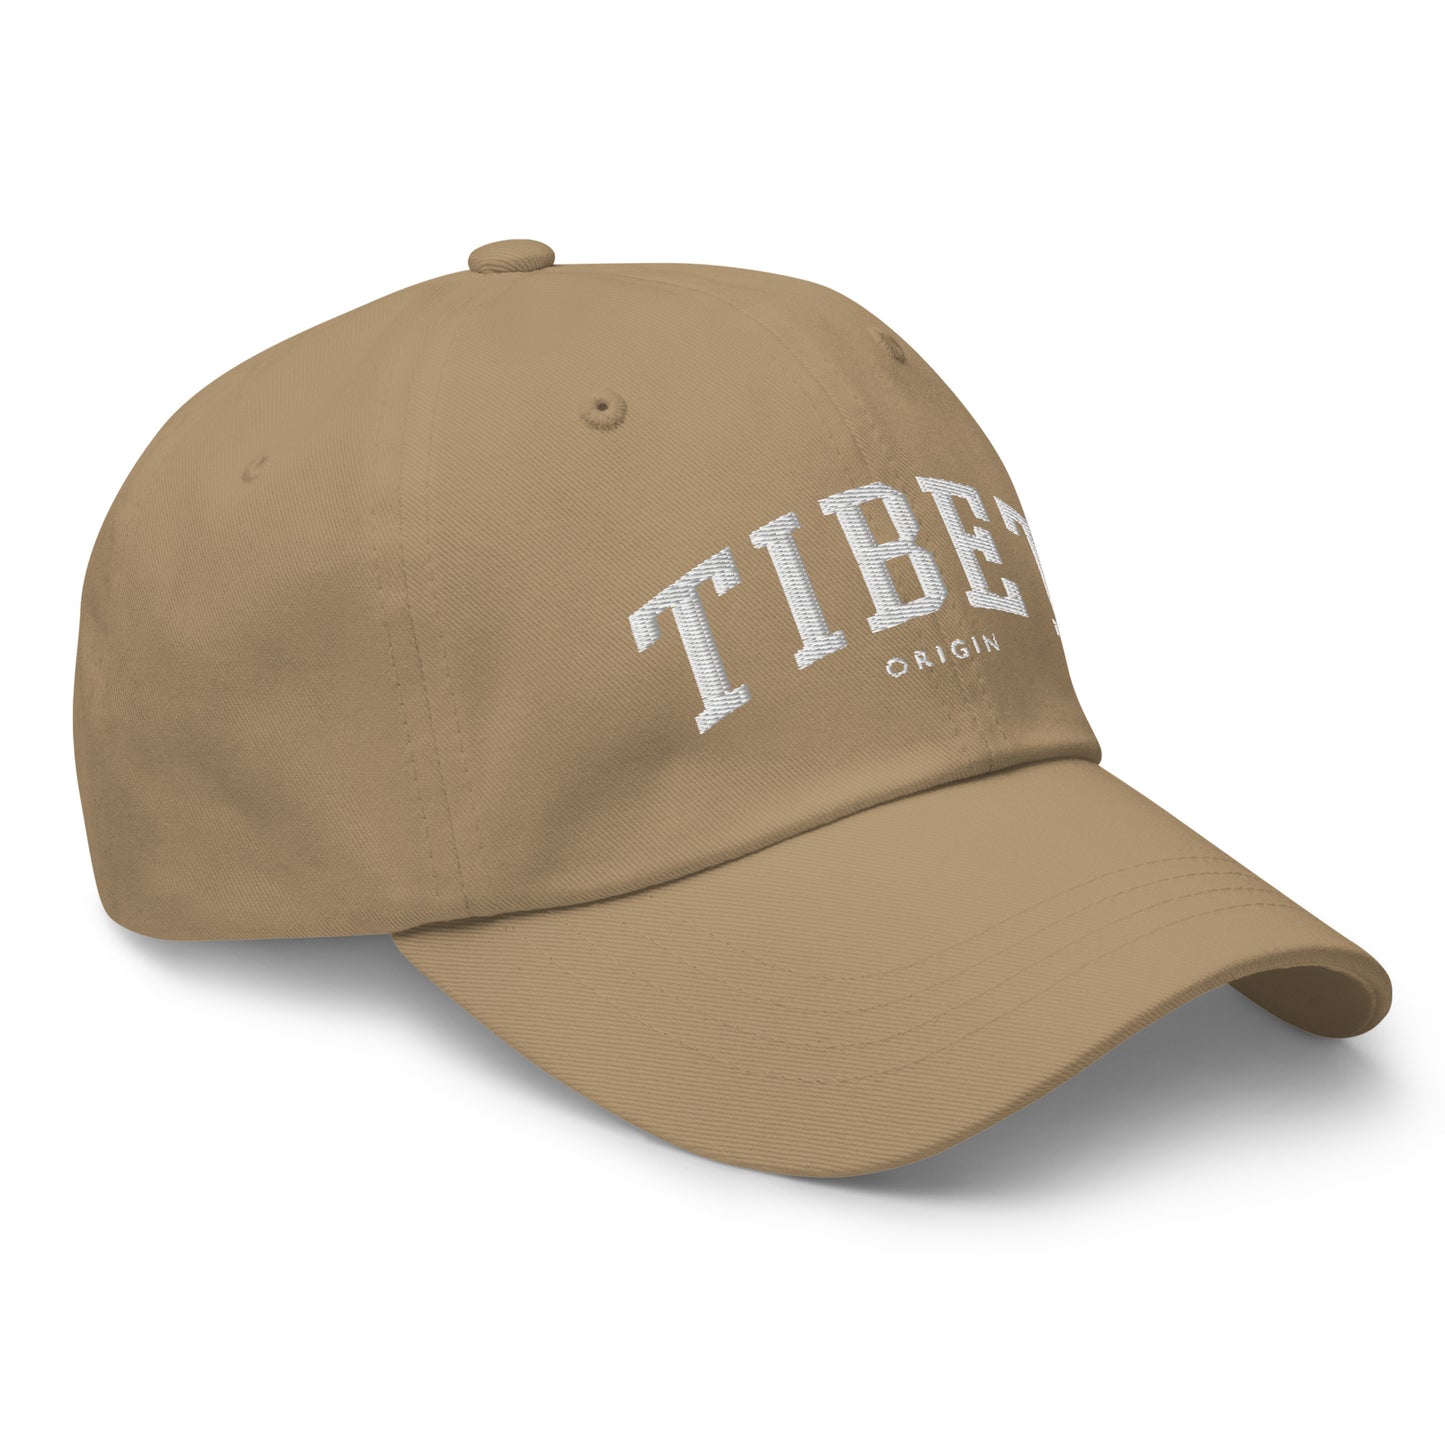 TIBET ORIGIN HAT